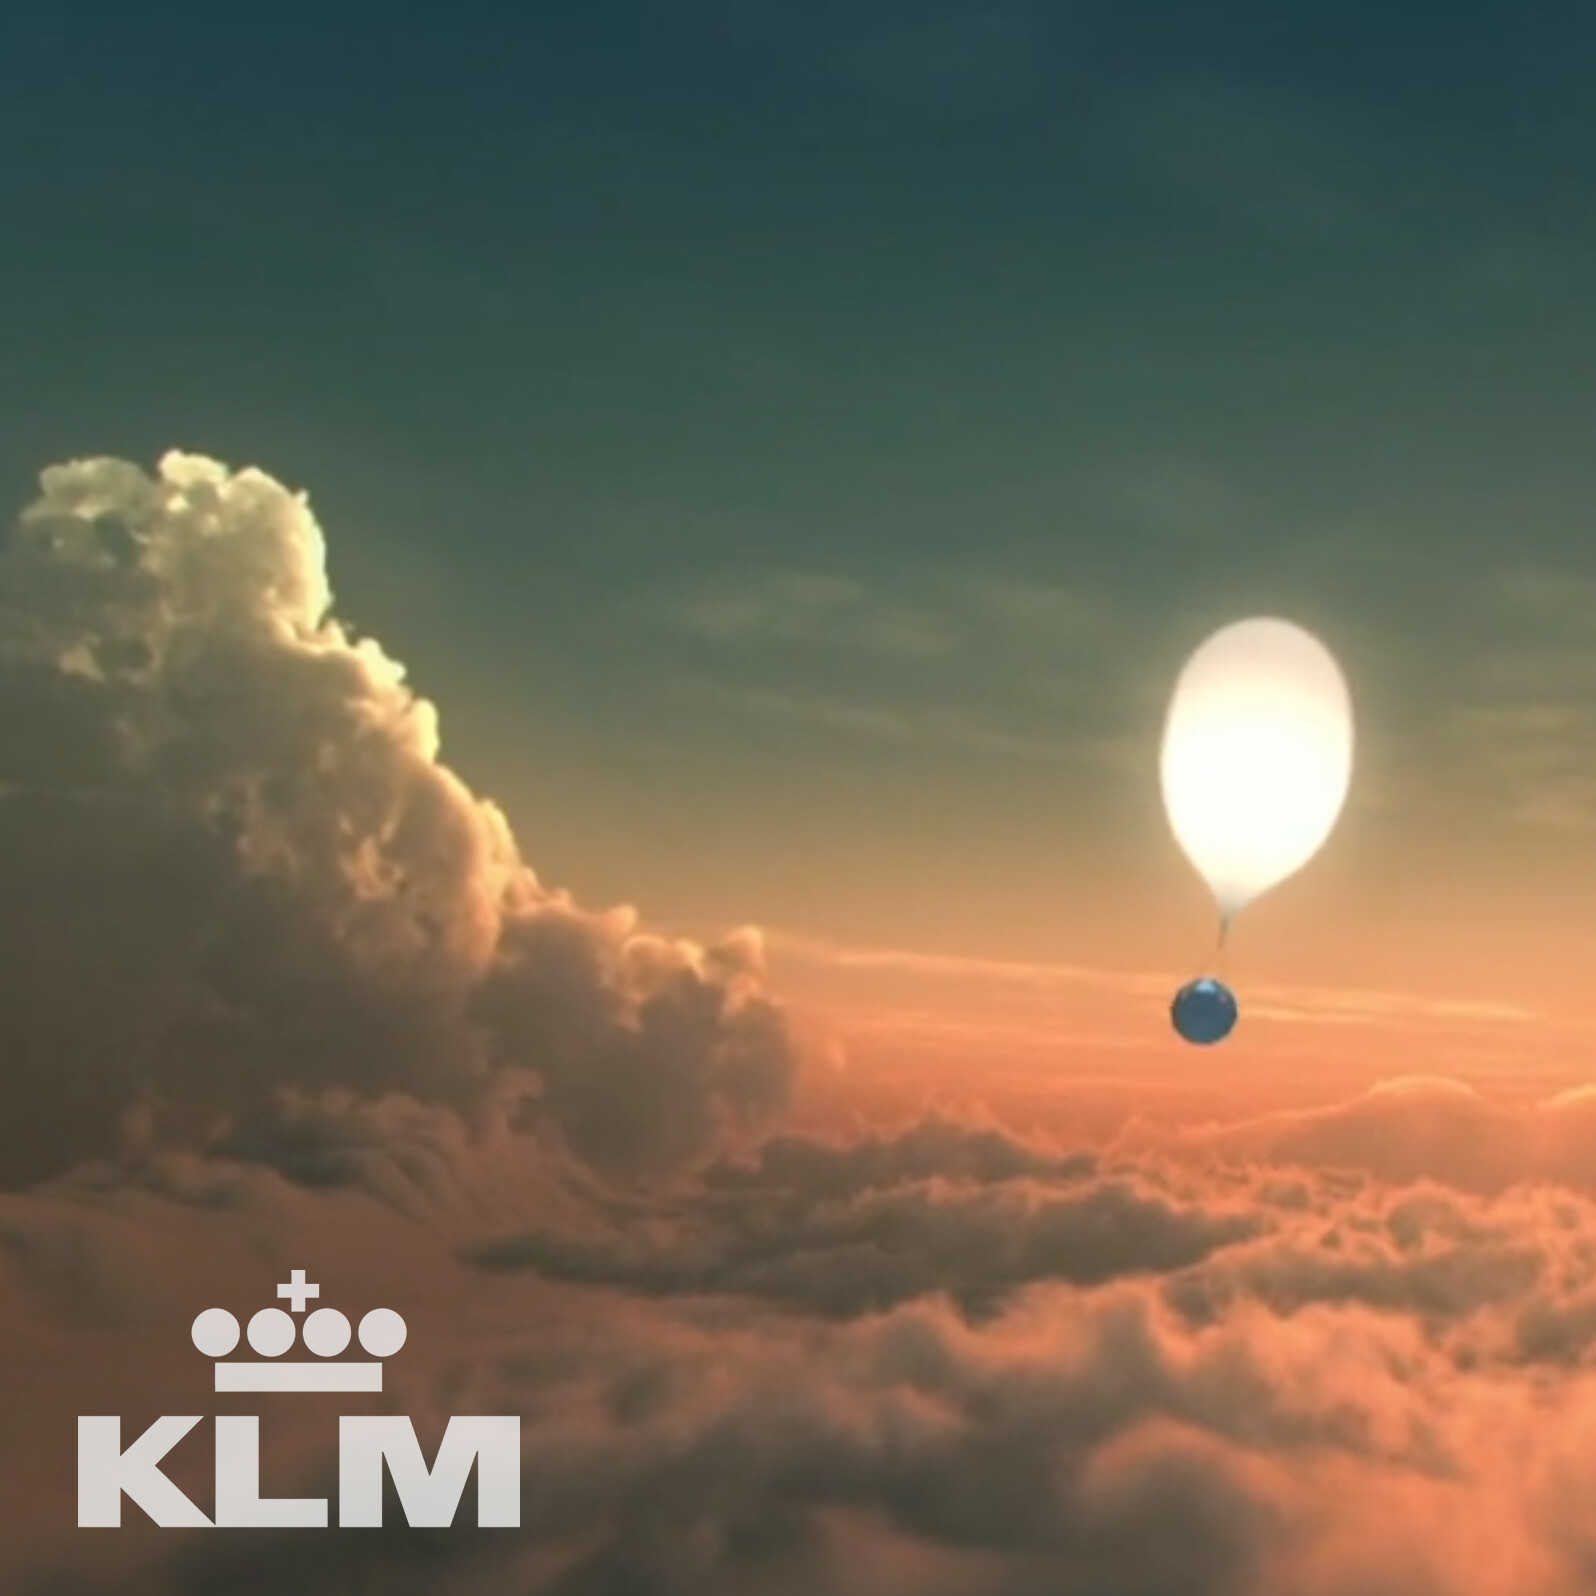 KLM: Space